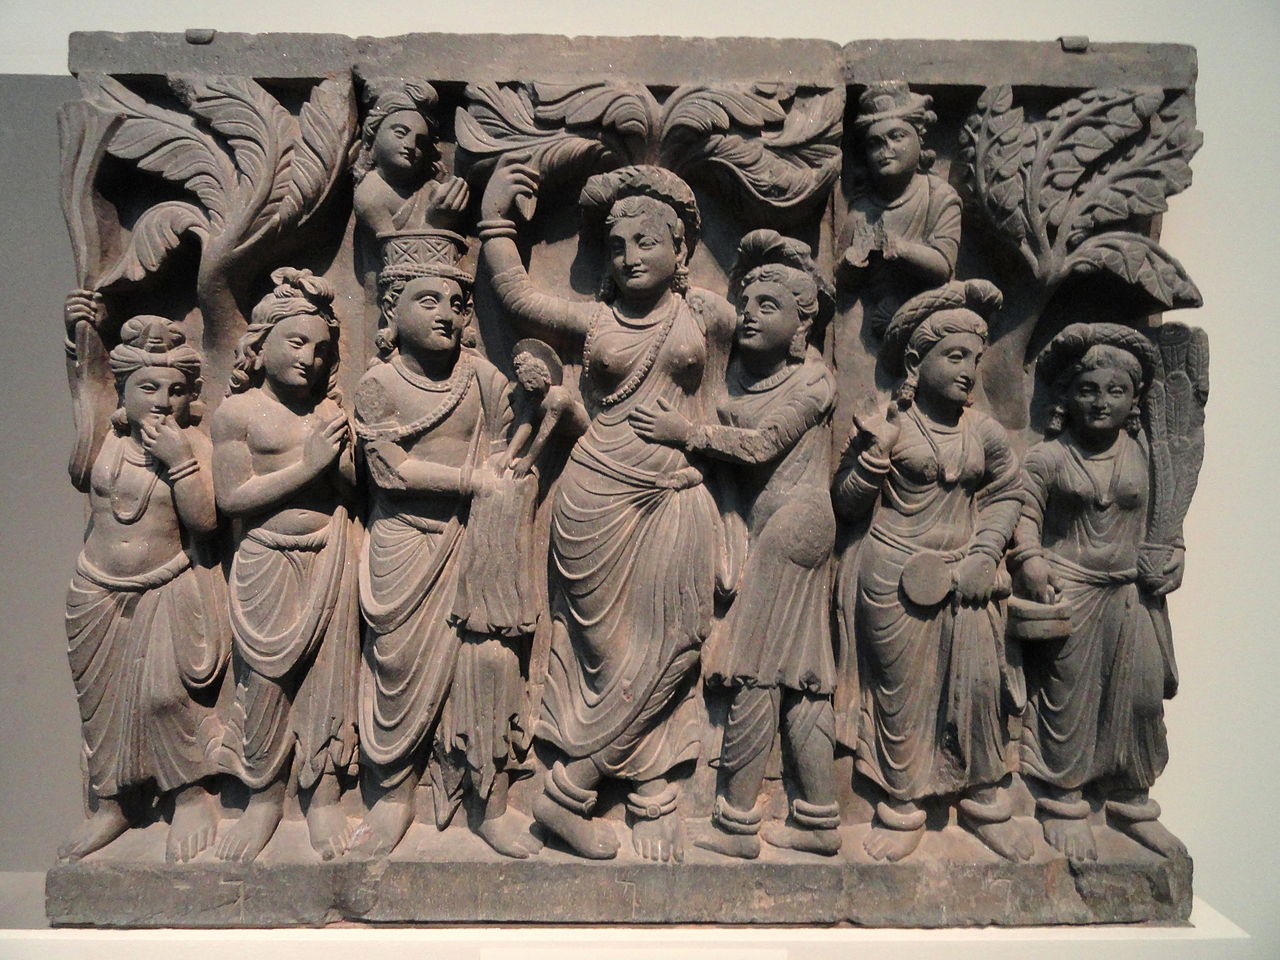 Birth of the Buddha (Scalpture)